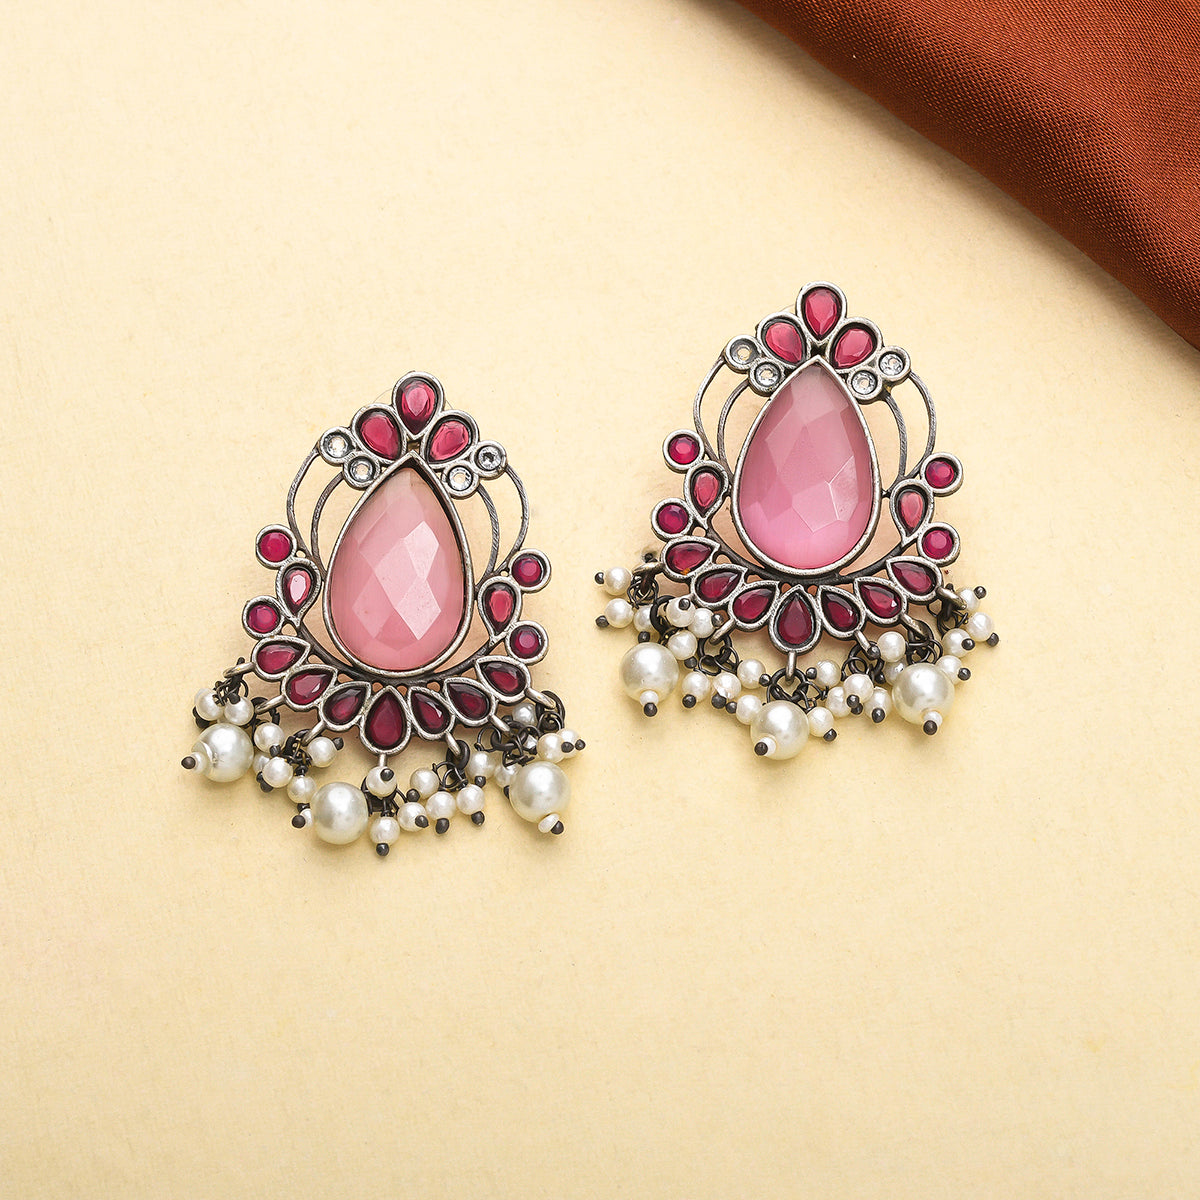 Women's Antique Elegance Pink Teardrop Faux Kundan And Pearls Brass Silver Plated Earrings - Voylla